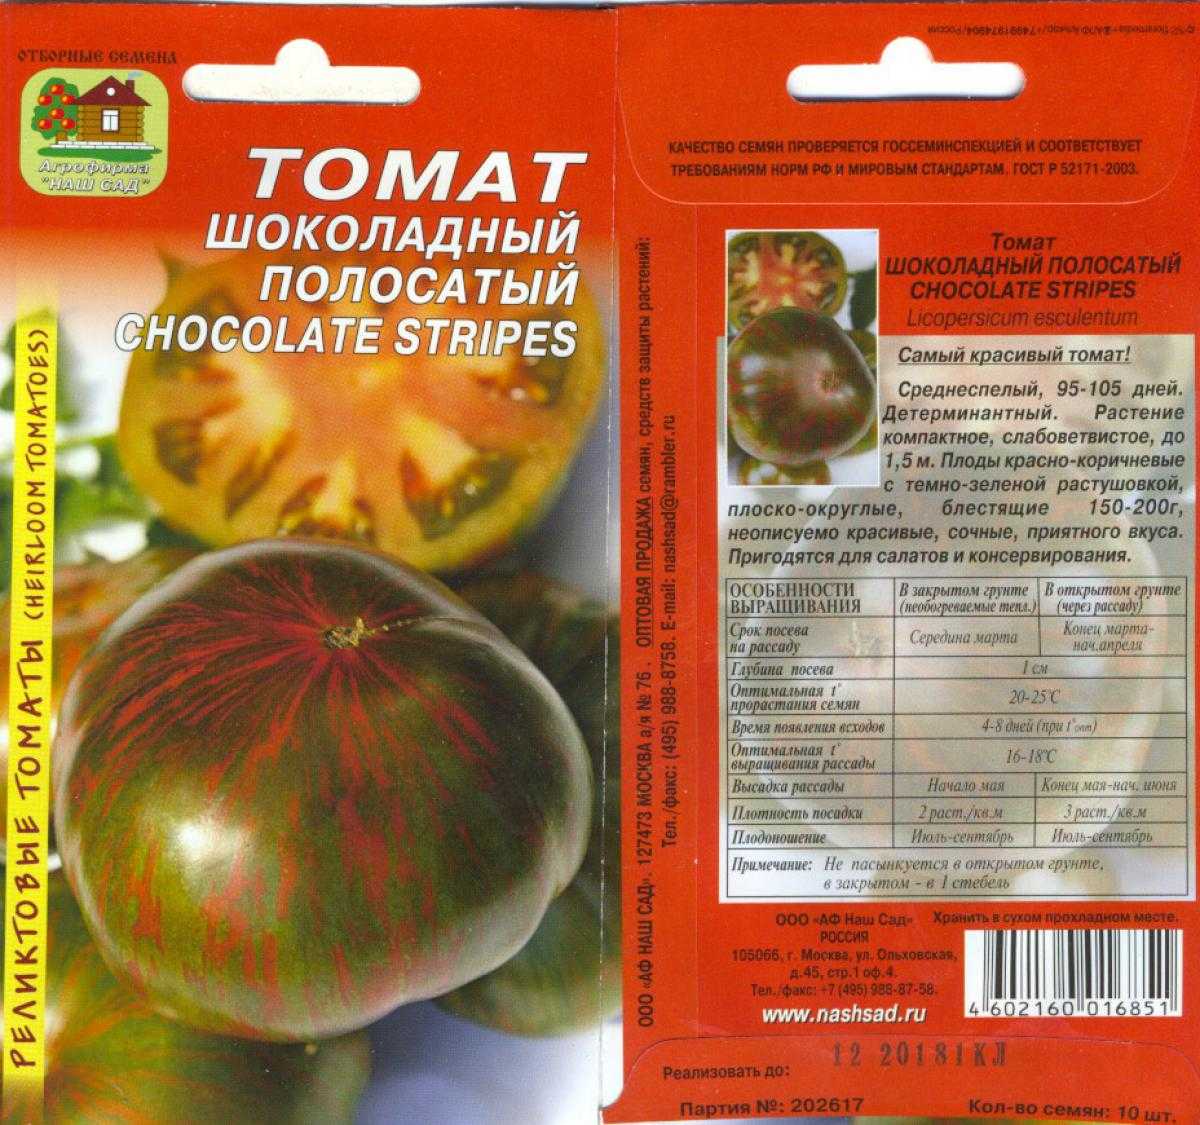 Томат полосатый шоколад характеристика и описание фото. Шоколадный полосатый томат семена. Сорт томата полосатый шоколад.